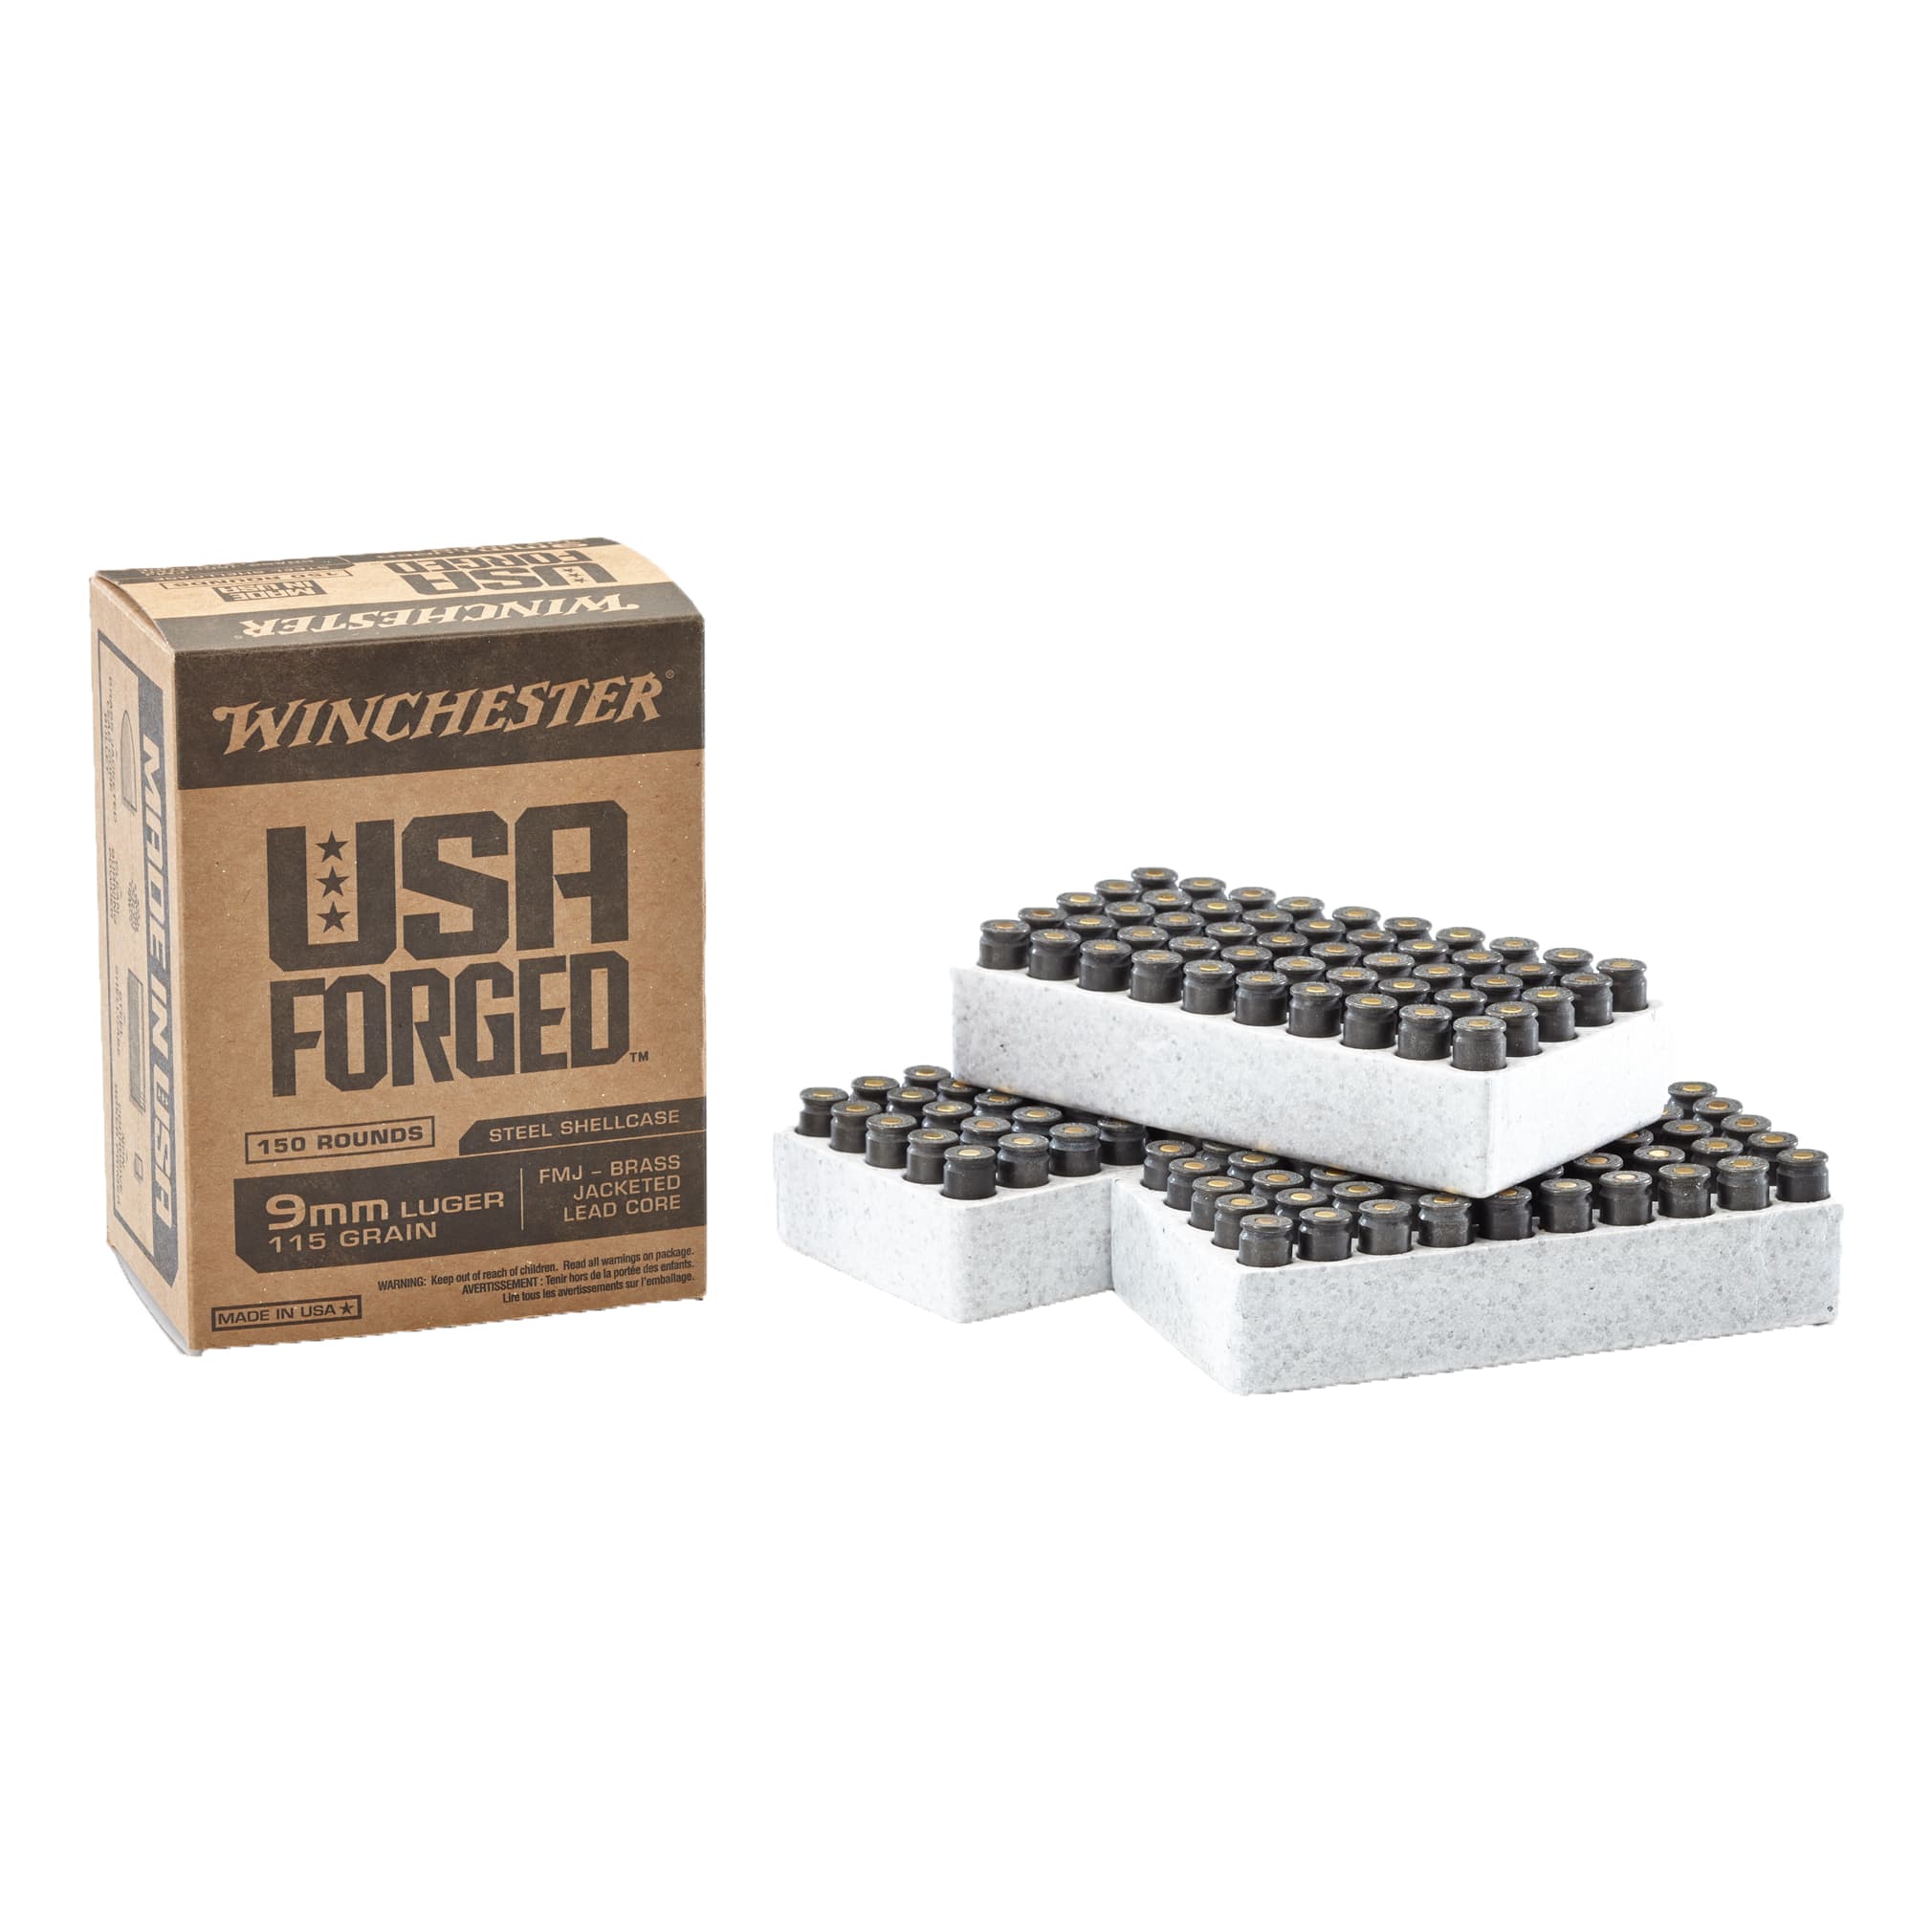 Winchester® USA Forged Steel Case Handgun Ammunition - 150 Rounds